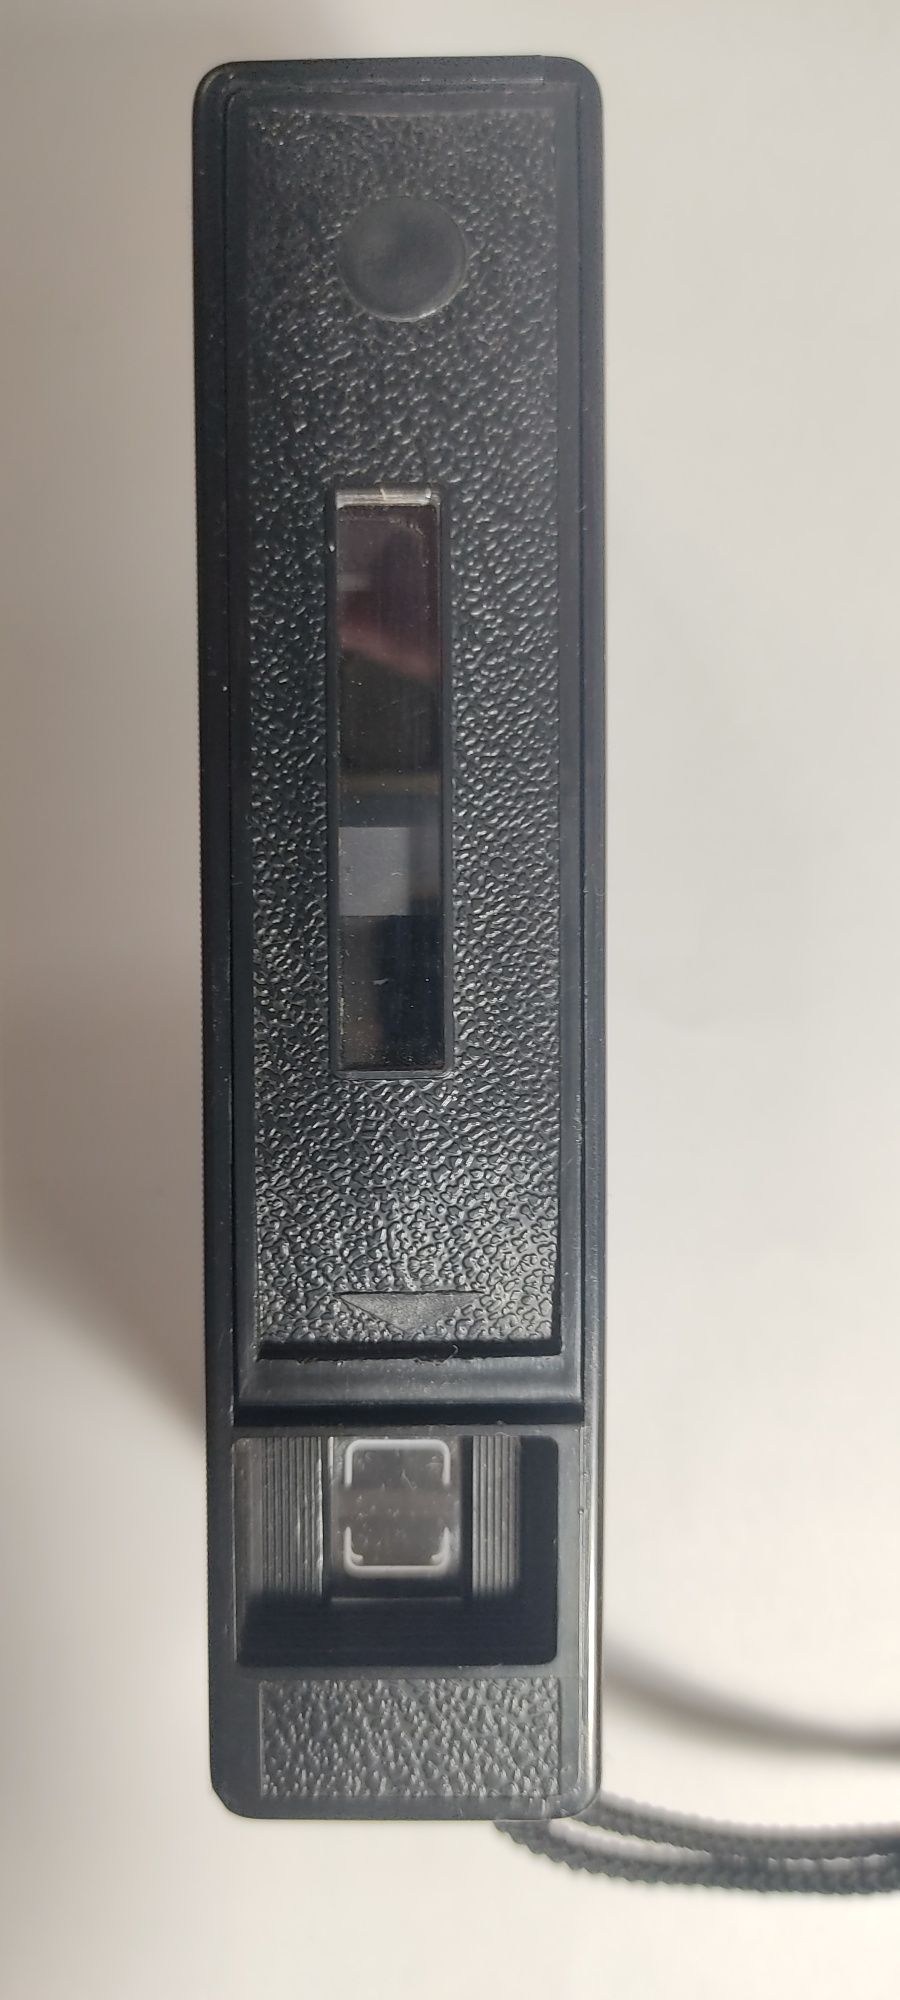 Kodak instamatic 300 aparat analogowy kompaktowy